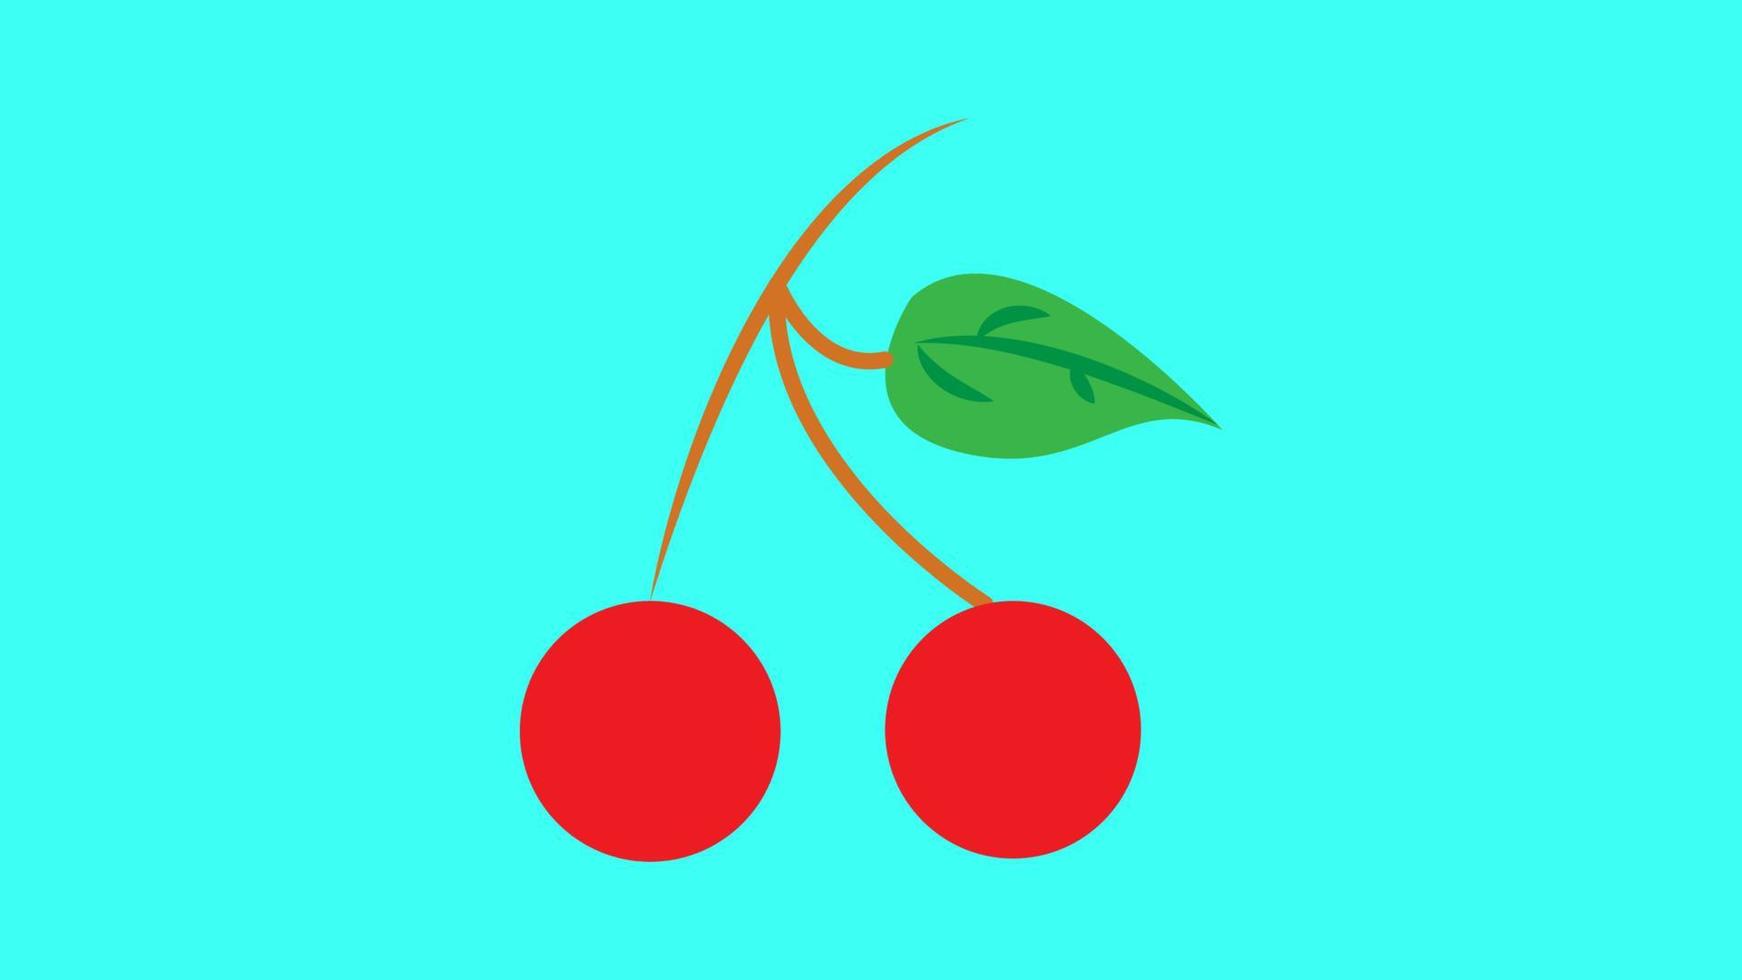 cereza roja madura con hojas verdes sobre fondo blanco. ilustración vectorial vector